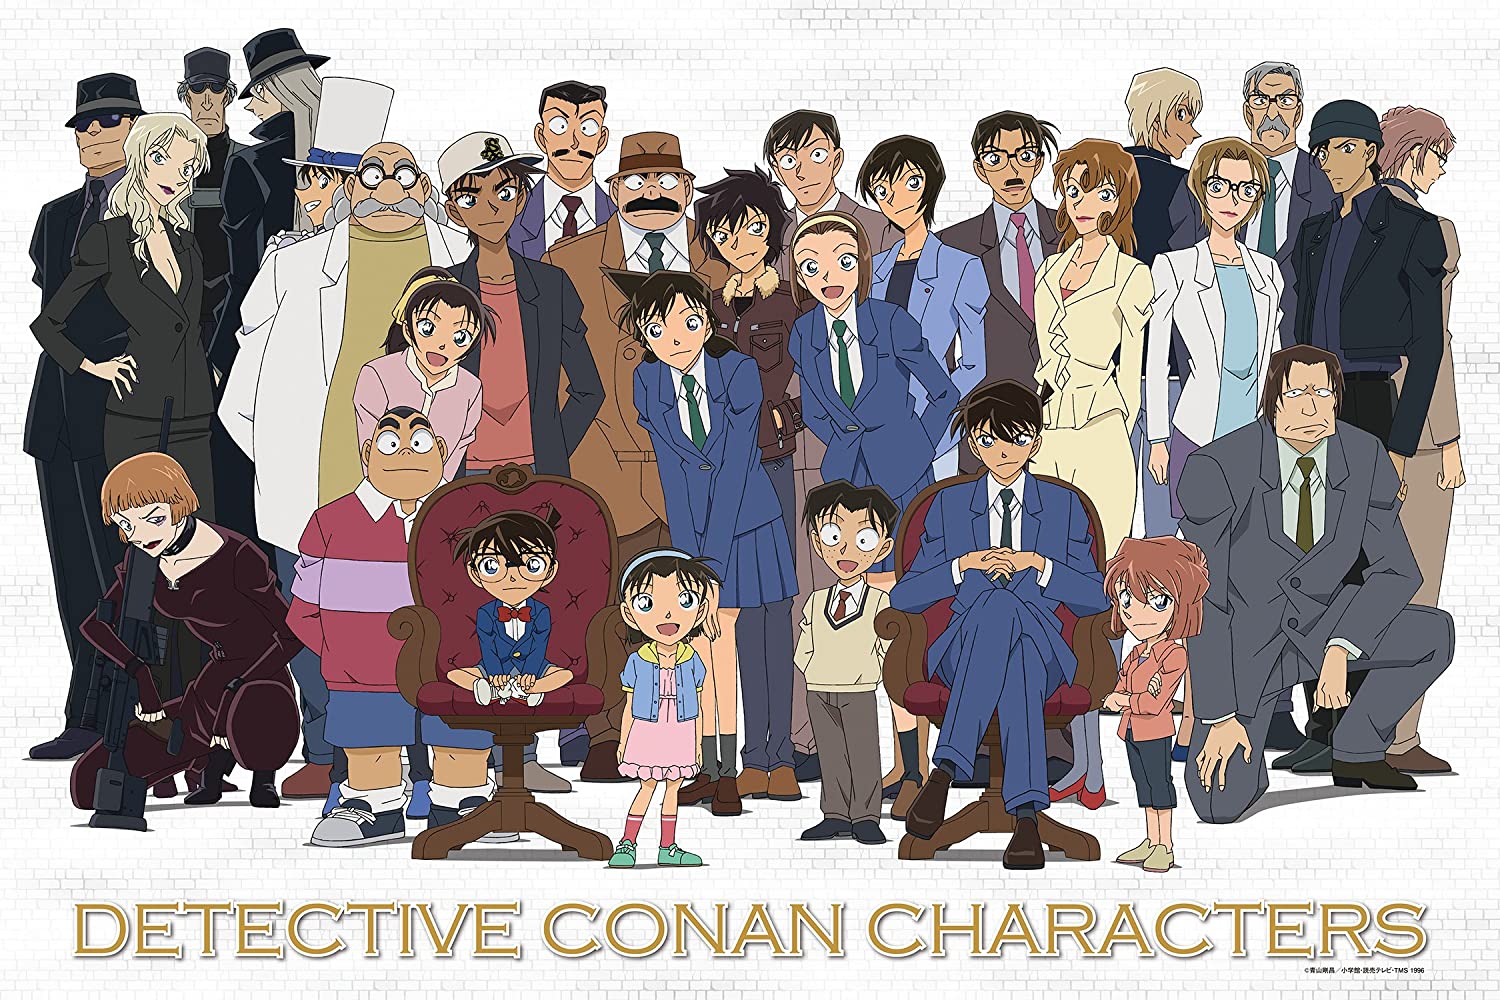 名探偵コナン 主要登場人物 重要キャラクター総まとめ 22年完全版 ホビーミュージアム